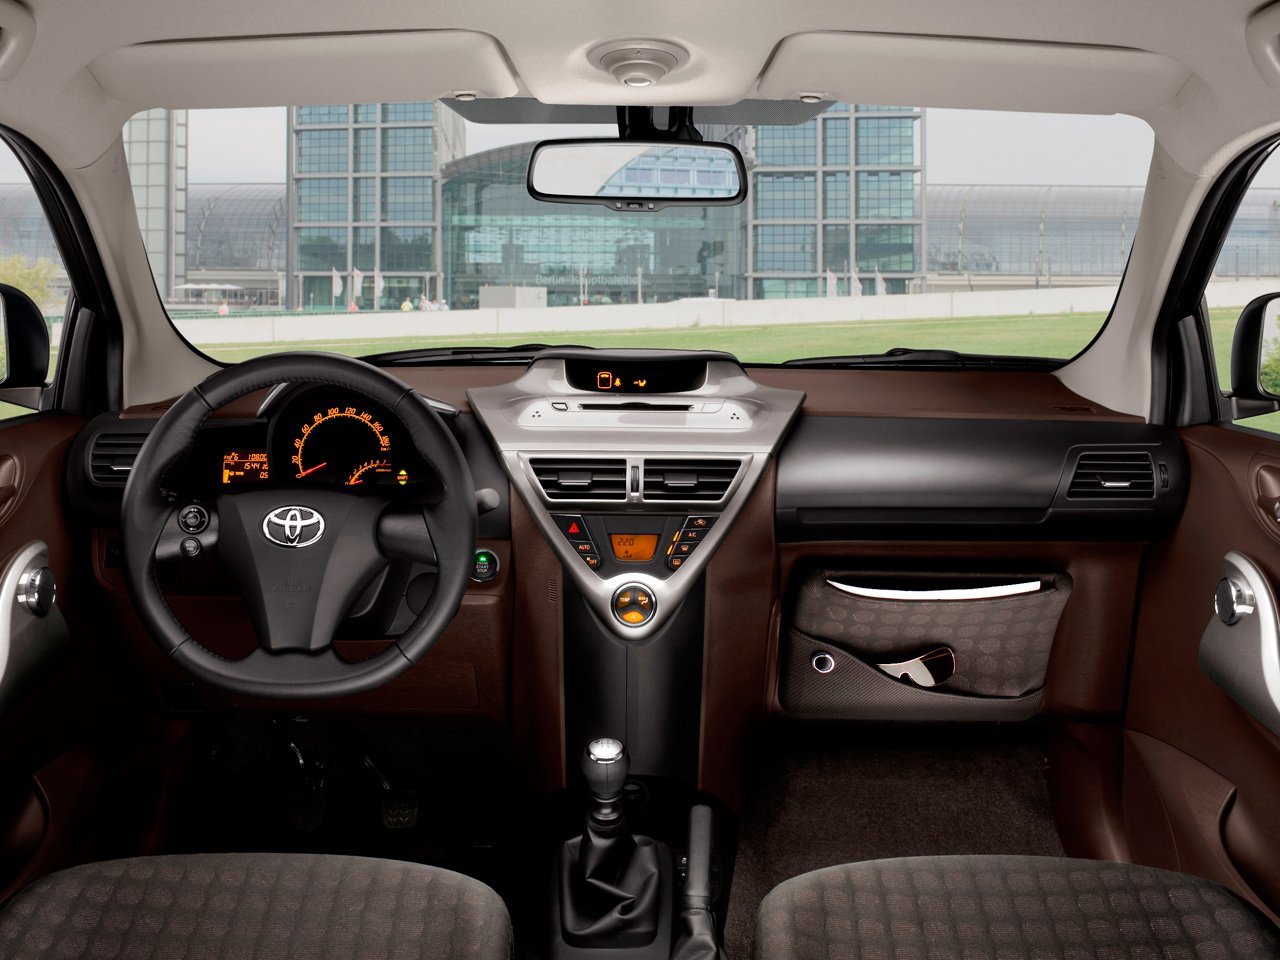 хэтчбек 3 дв. Toyota iQ 2009 - 2011г выпуска модификация 1.0 CVT (68 л.с.)